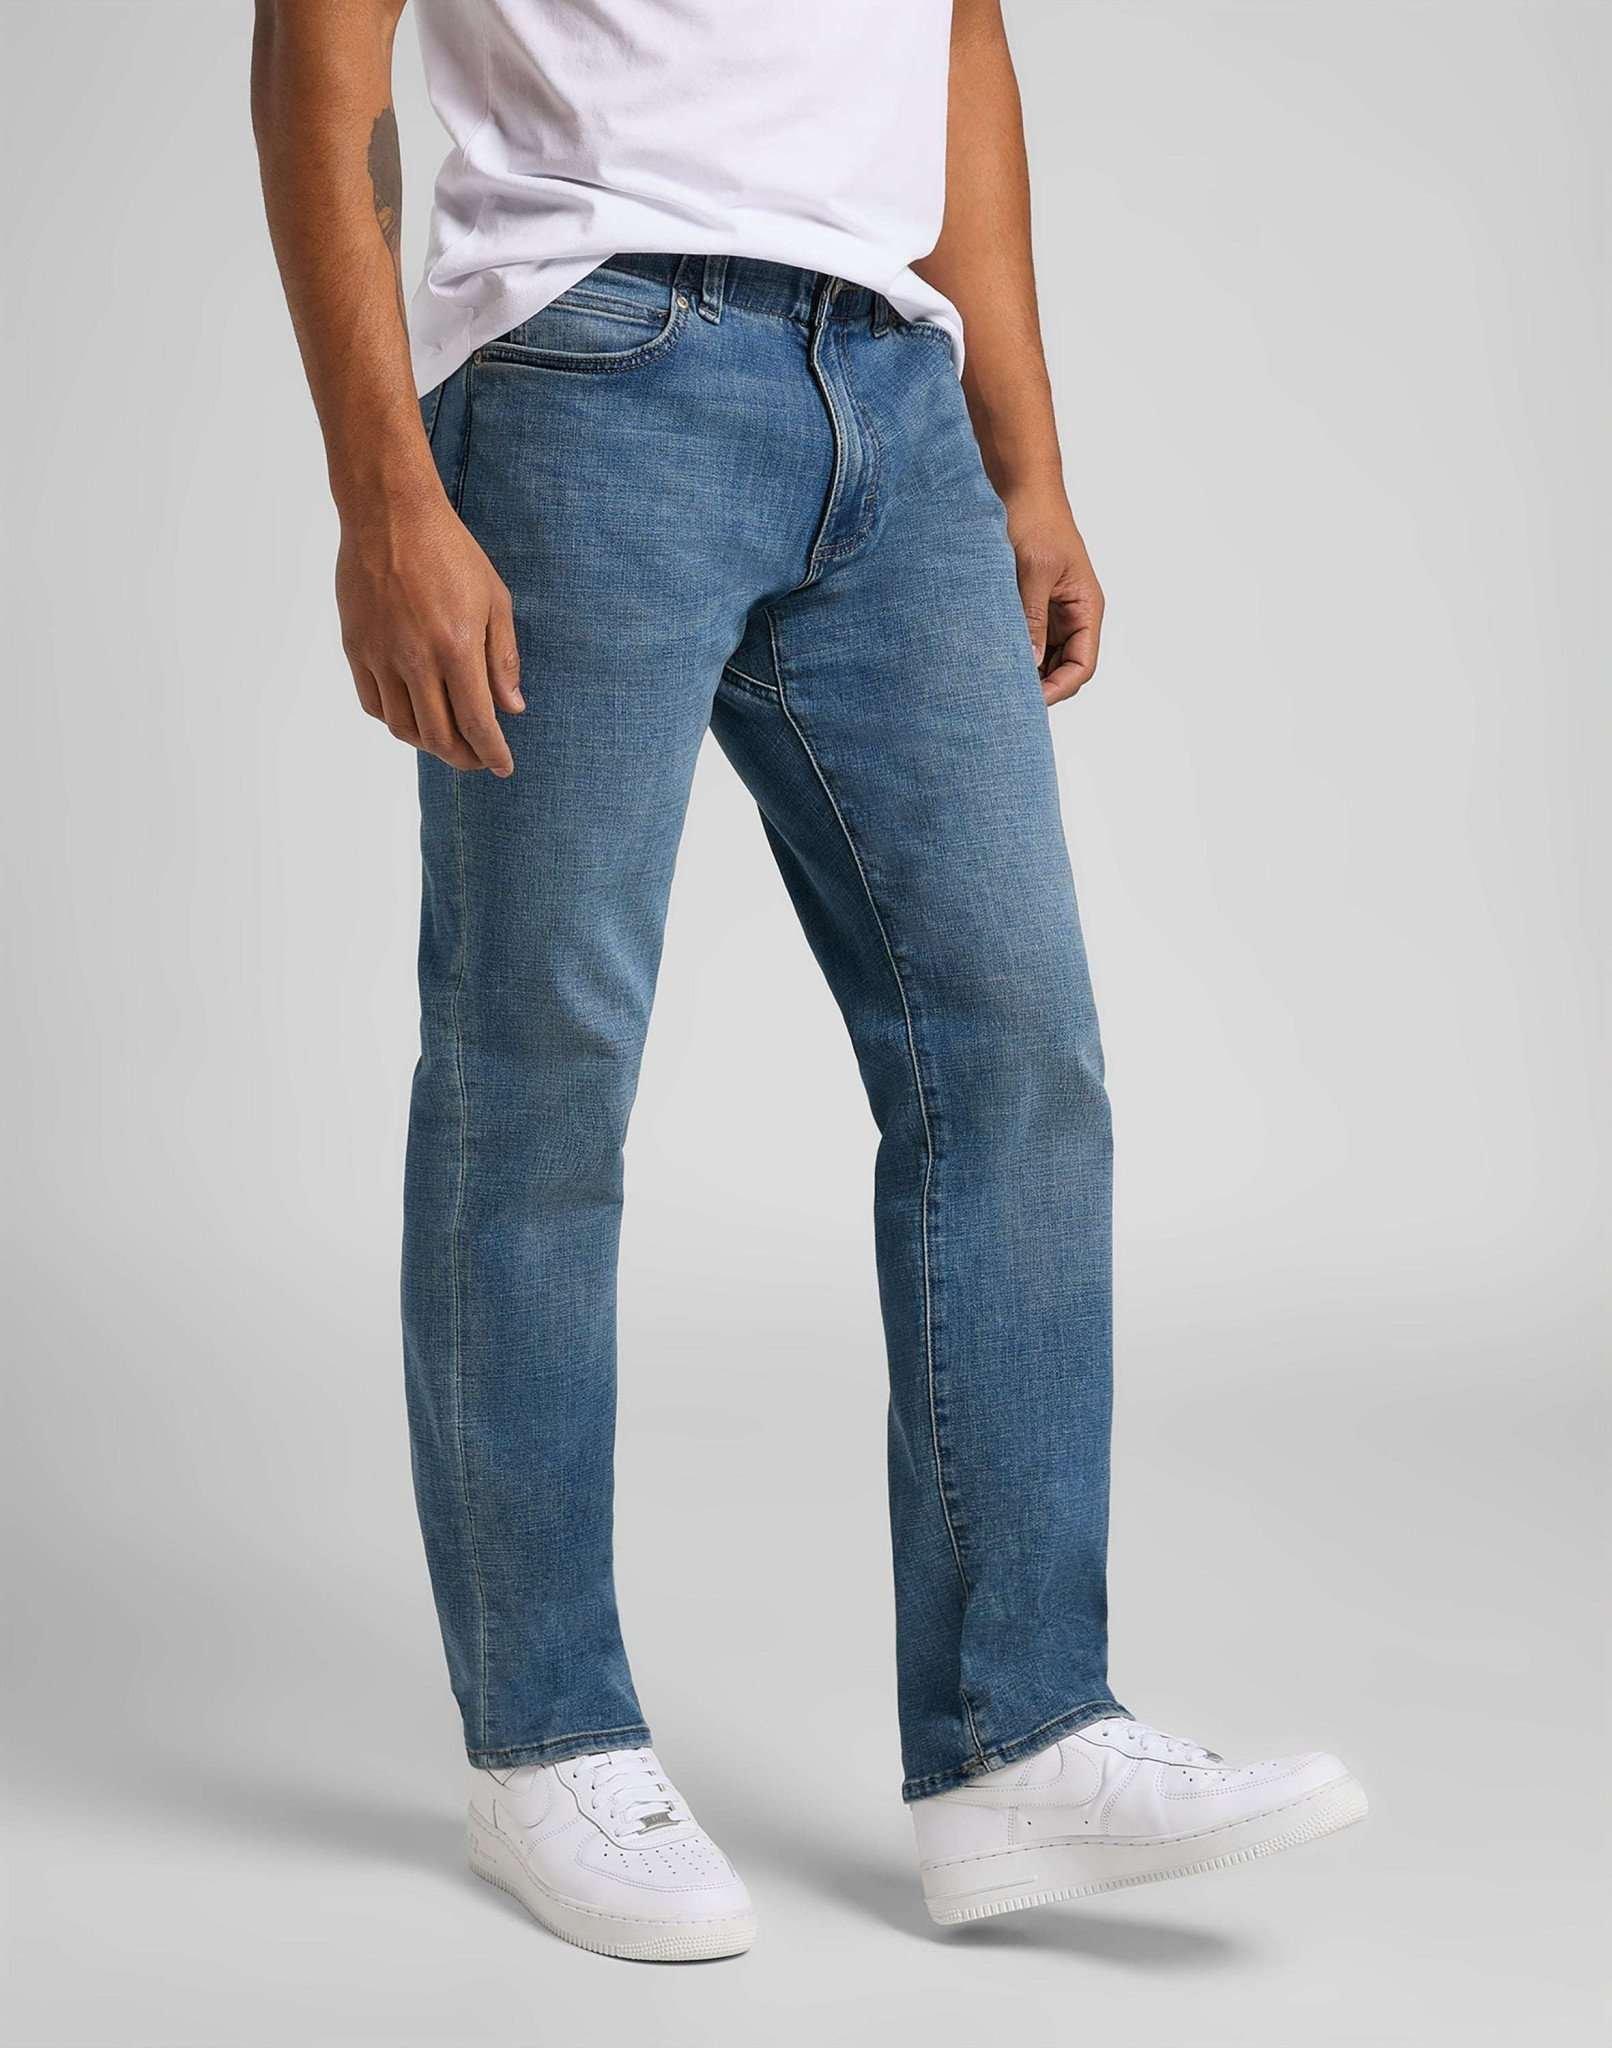 Jeans Straight Leg Mvp Herren Blau Denim L34/W31 von Lee